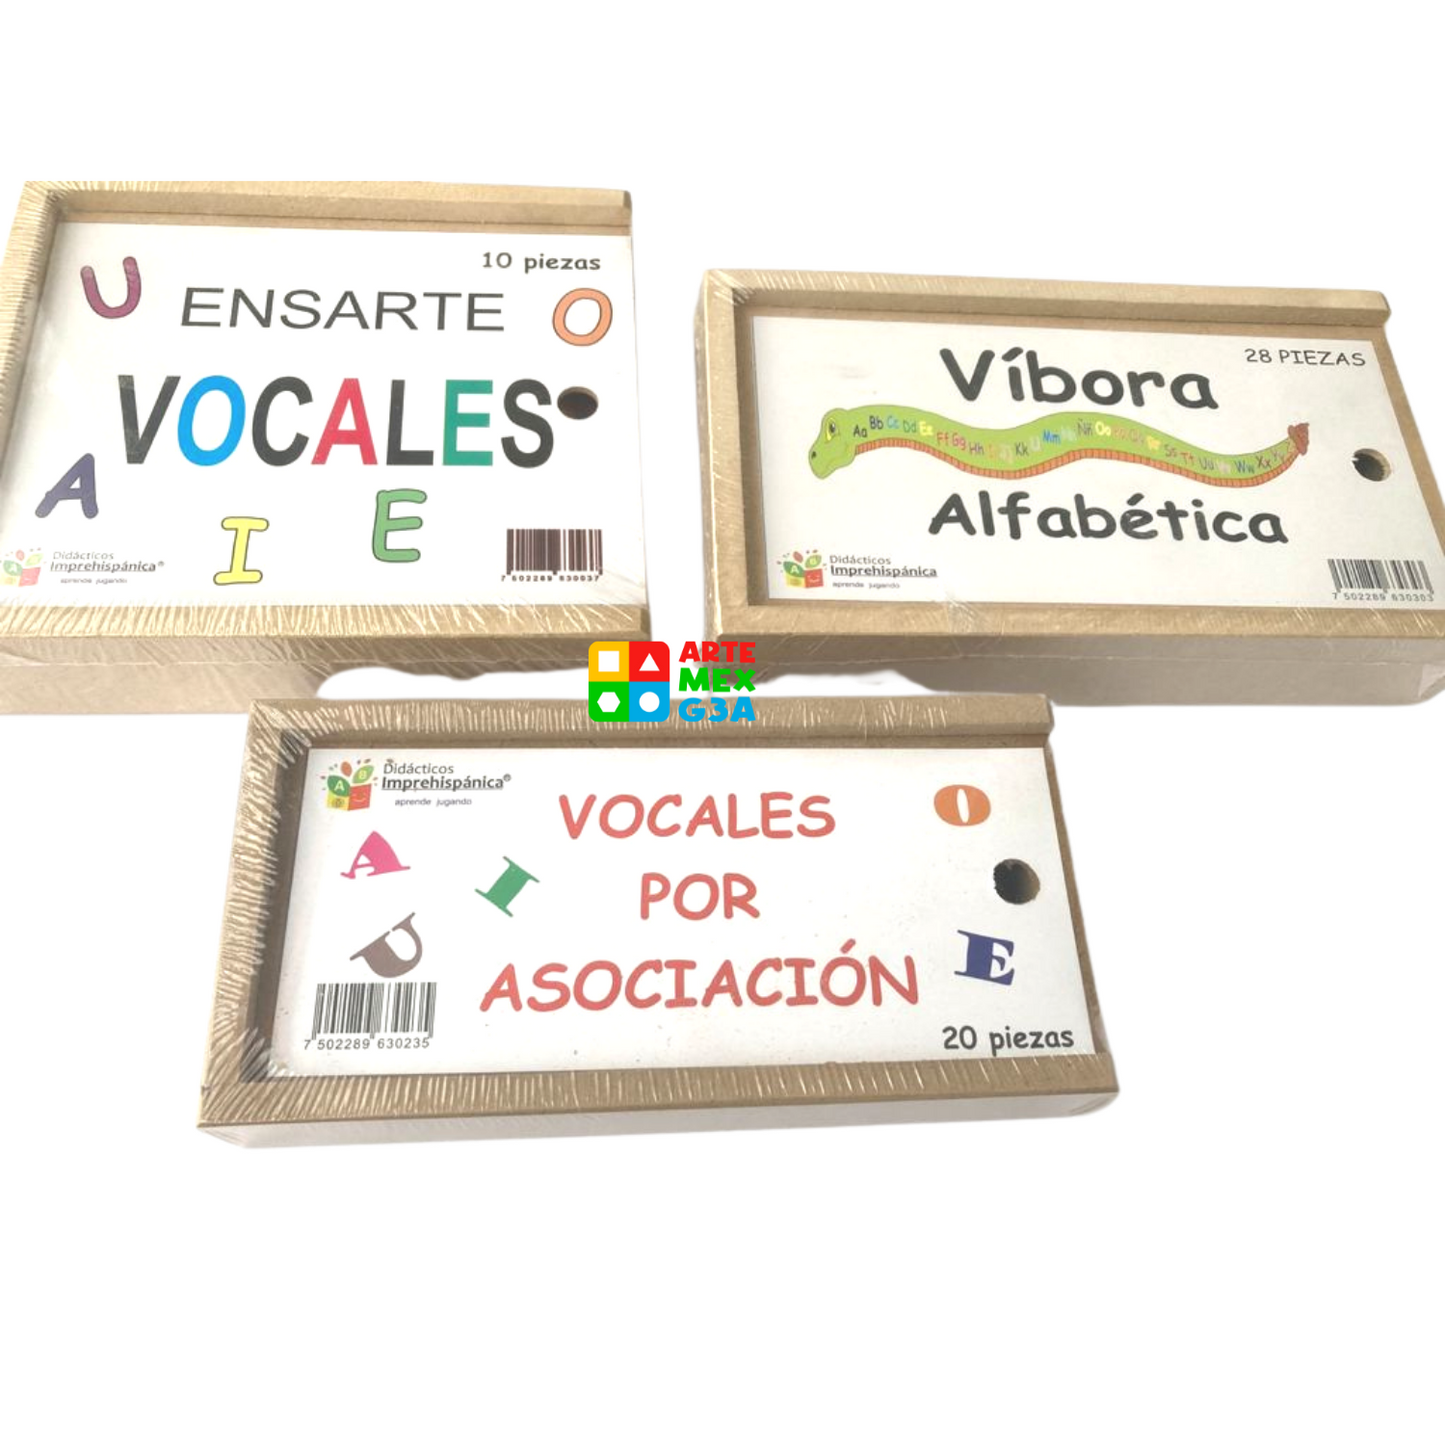 Kit de Vocales x asocia, ensartes de vocales con rompecabezas en forma de Víbora abc